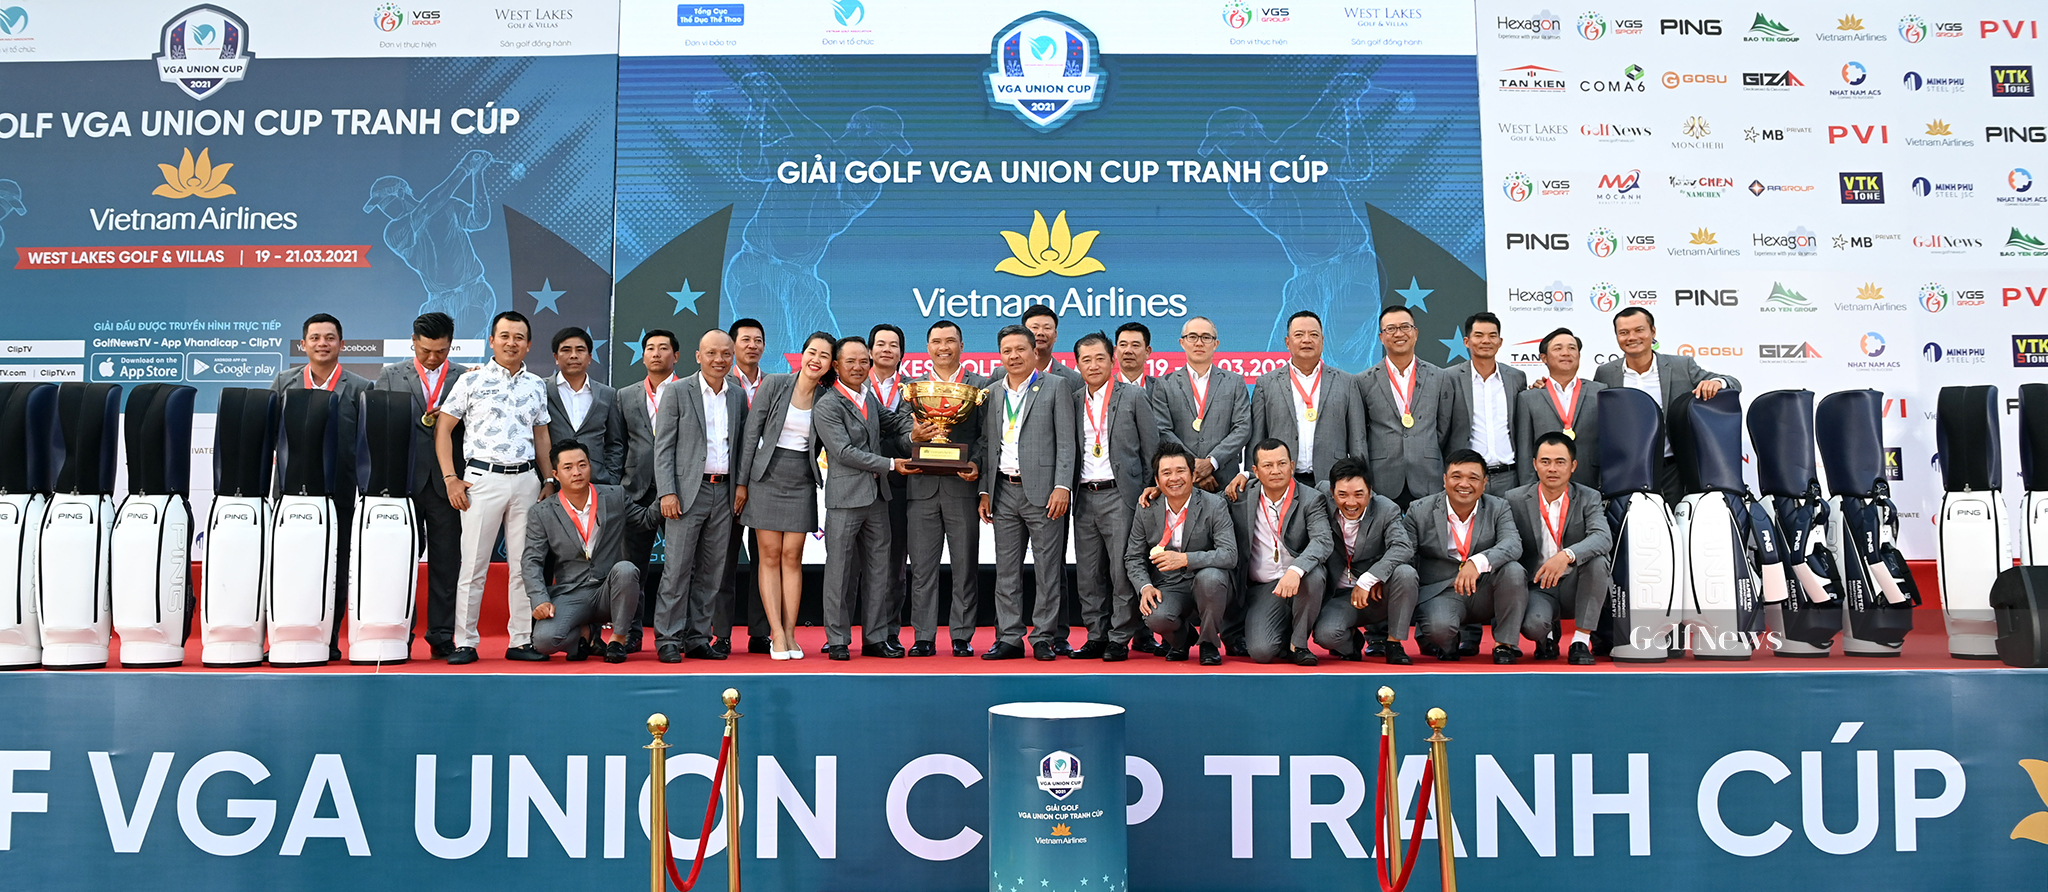 Những yếu tố làm nên chiến thắng cho tuyển miền Nam tại VGA Union Cup tranh cúp Vietnam Airlines?